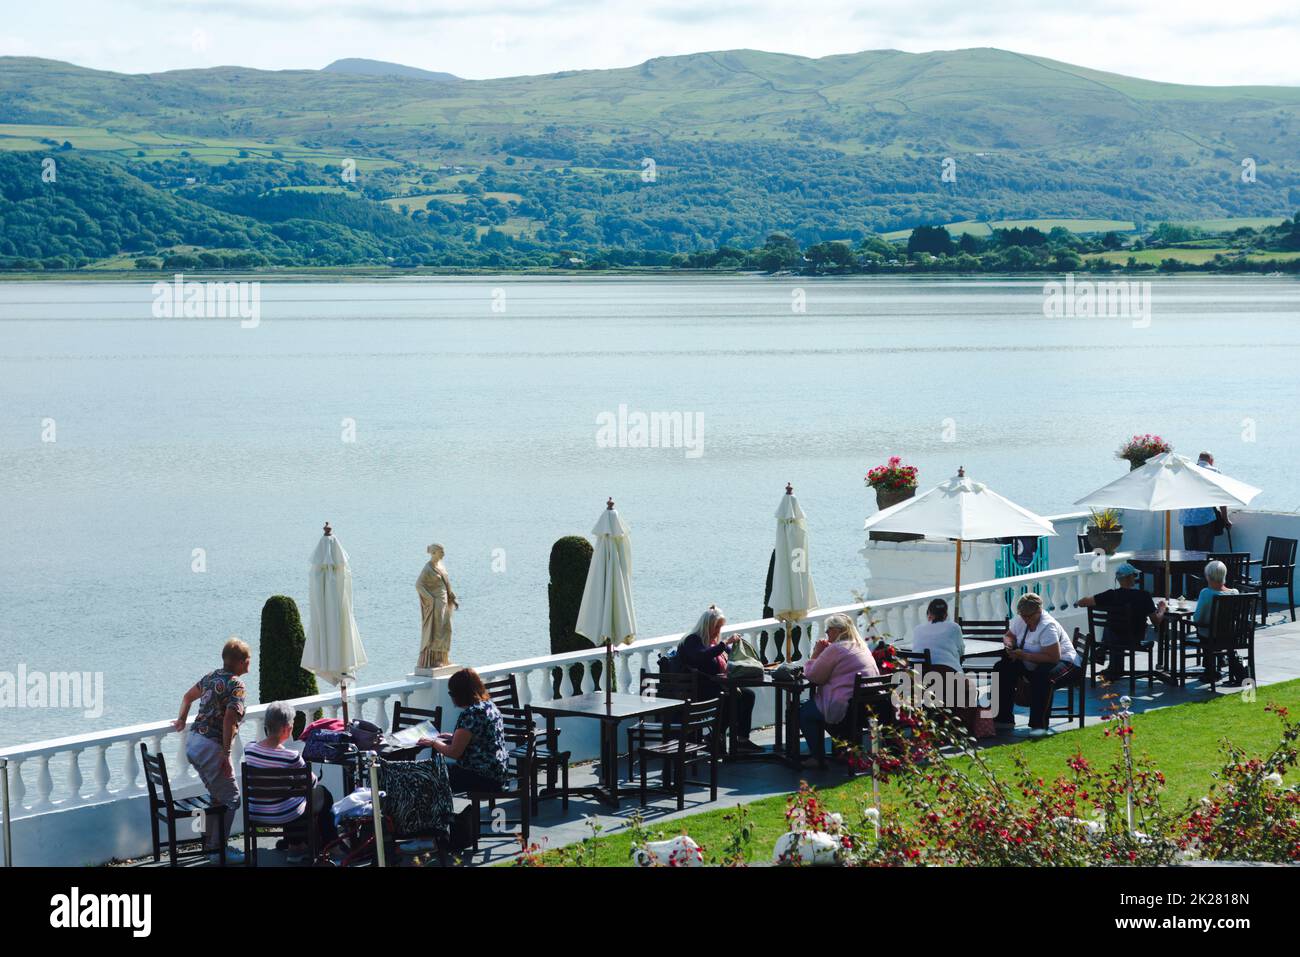 Portmerion - pays de Galles - 14 septembre 2022 : les touristes se détendent sur une terrasse ensoleillée au bord de la rivière. Belle vue pittoresque de l'été par une journée ensoleillée. Banque D'Images